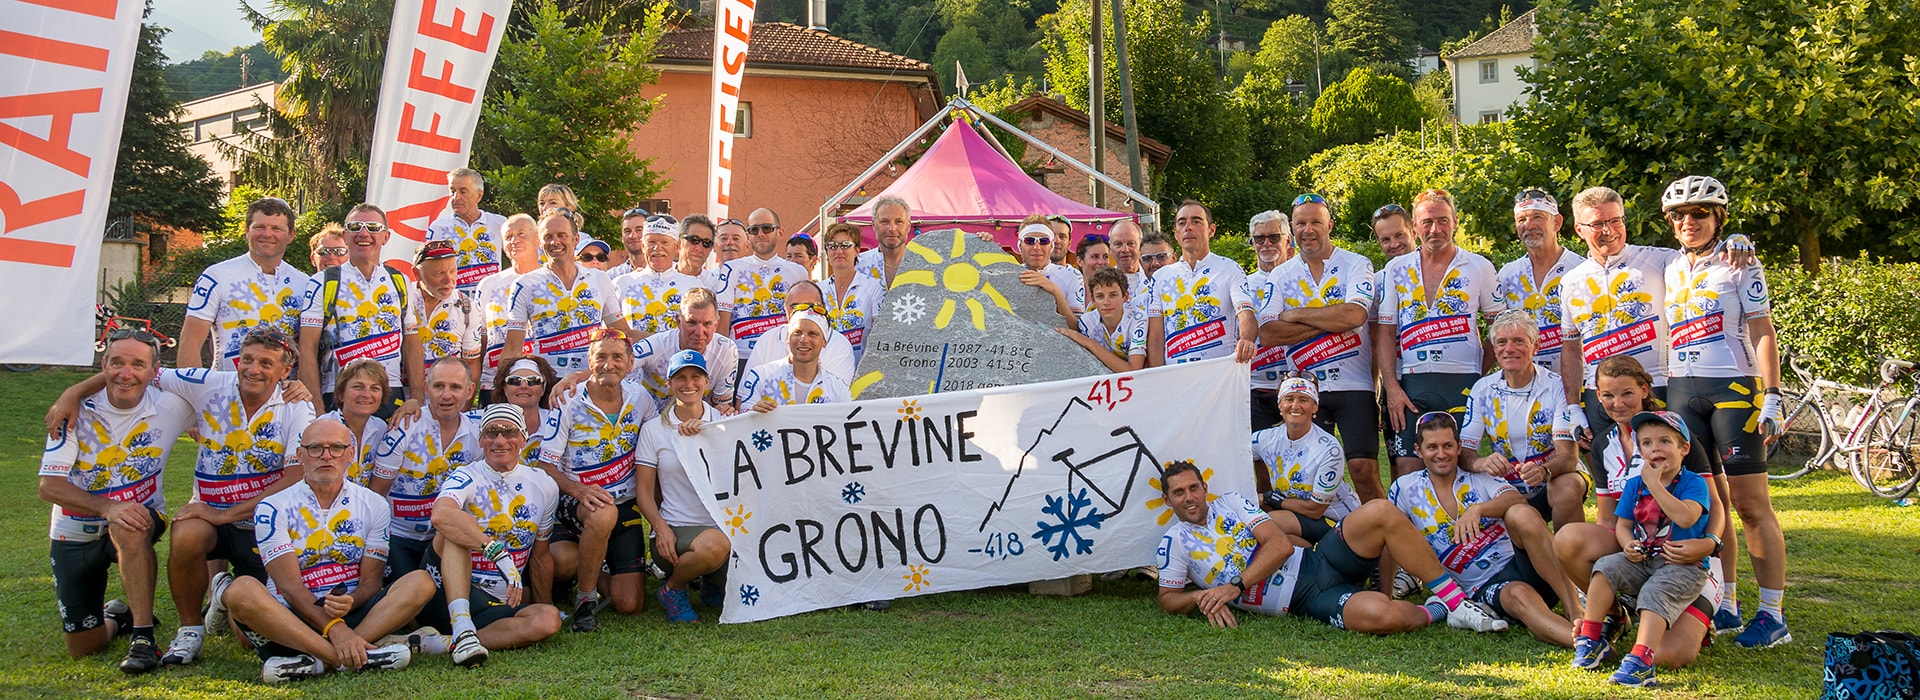 Grono e La Brévine unite per un clima migliore con 'Temperature in sella'